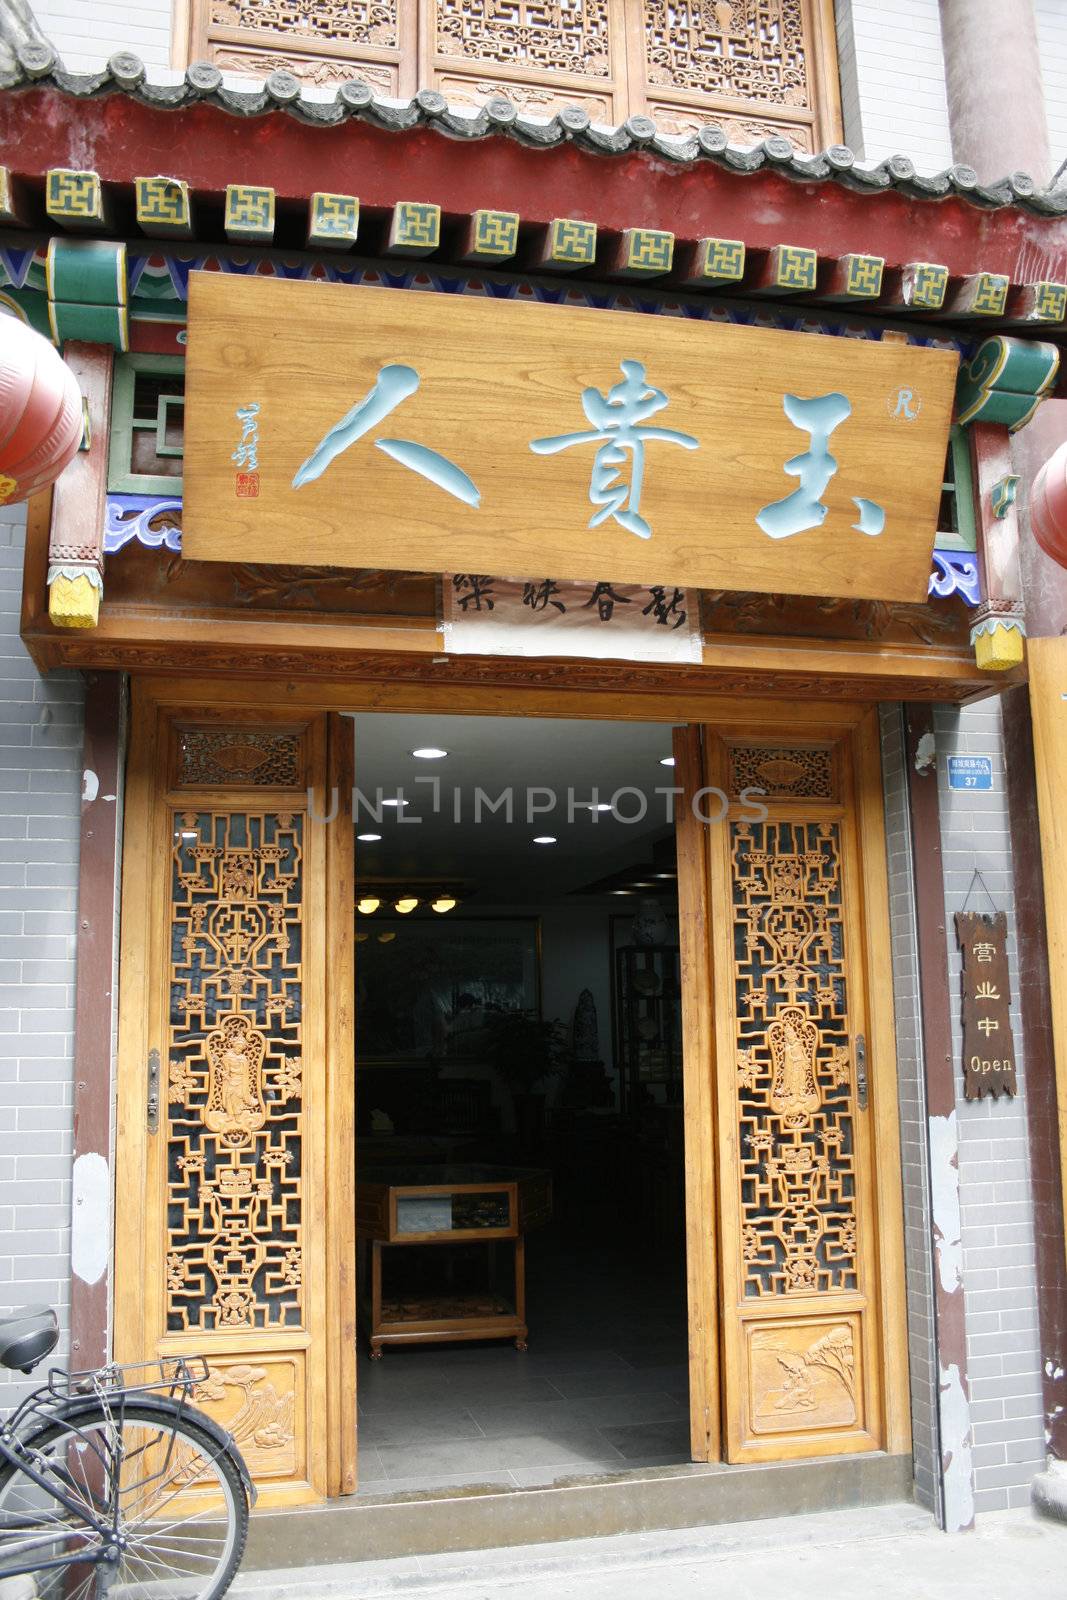 downtown of Xian, Wooden door in the old town